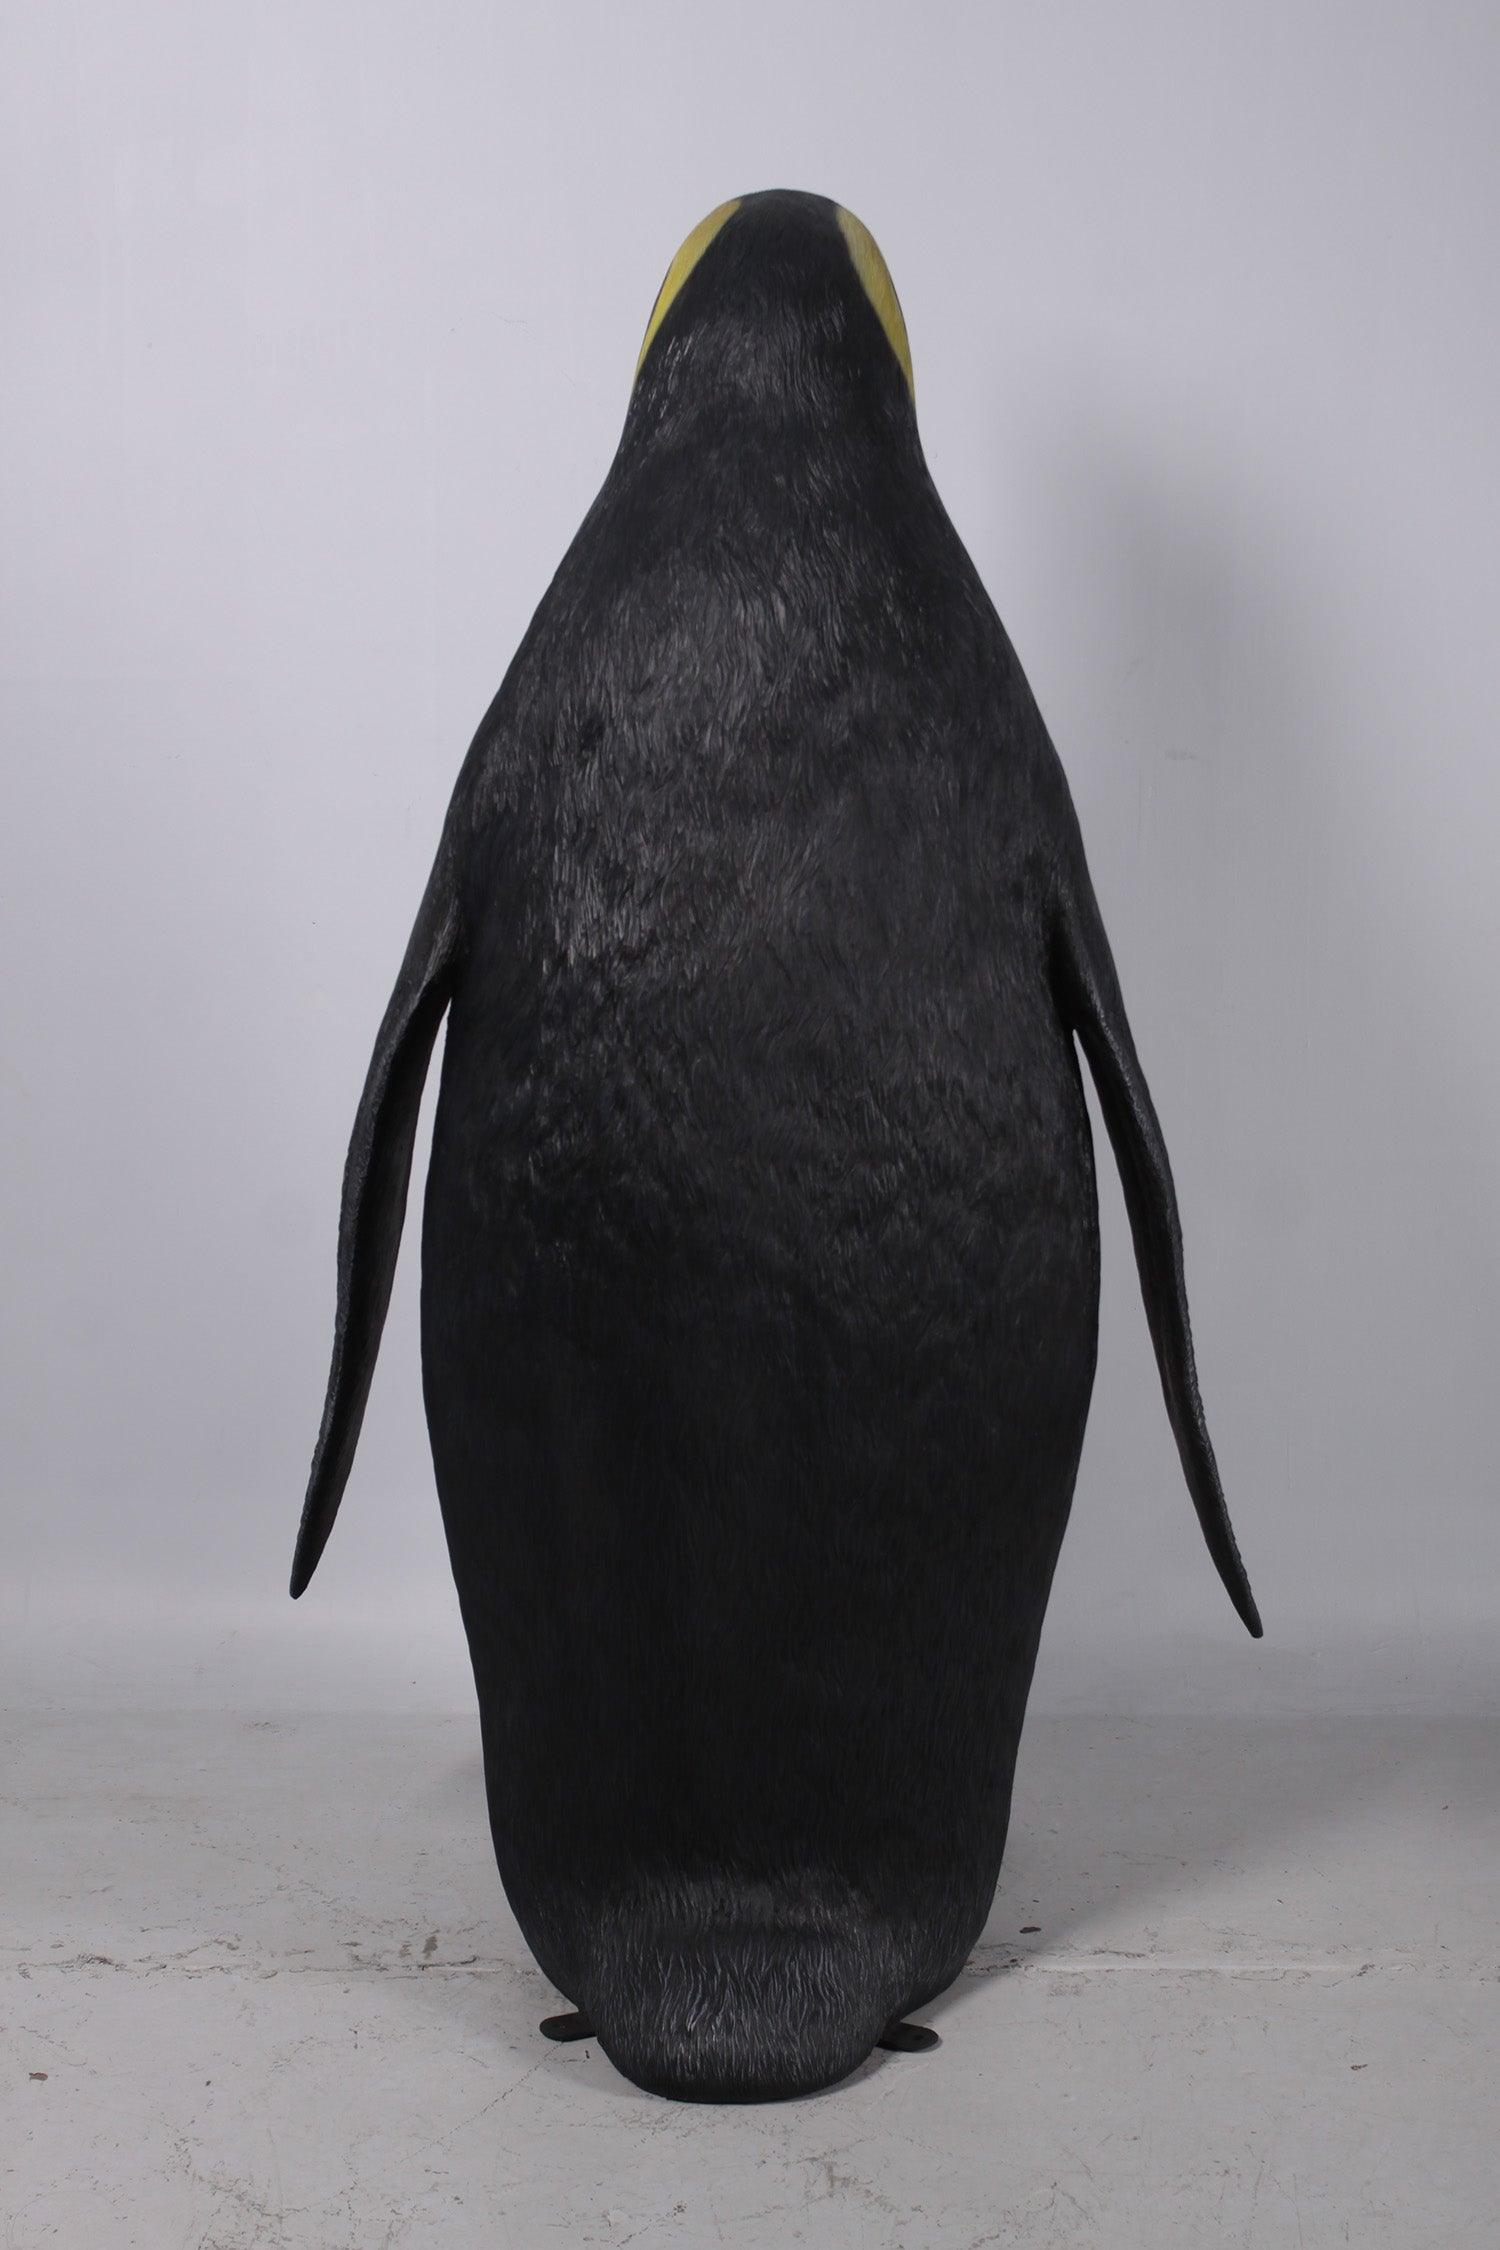 Jumbo King Penguin Statue - LM Treasures Prop Rentals 